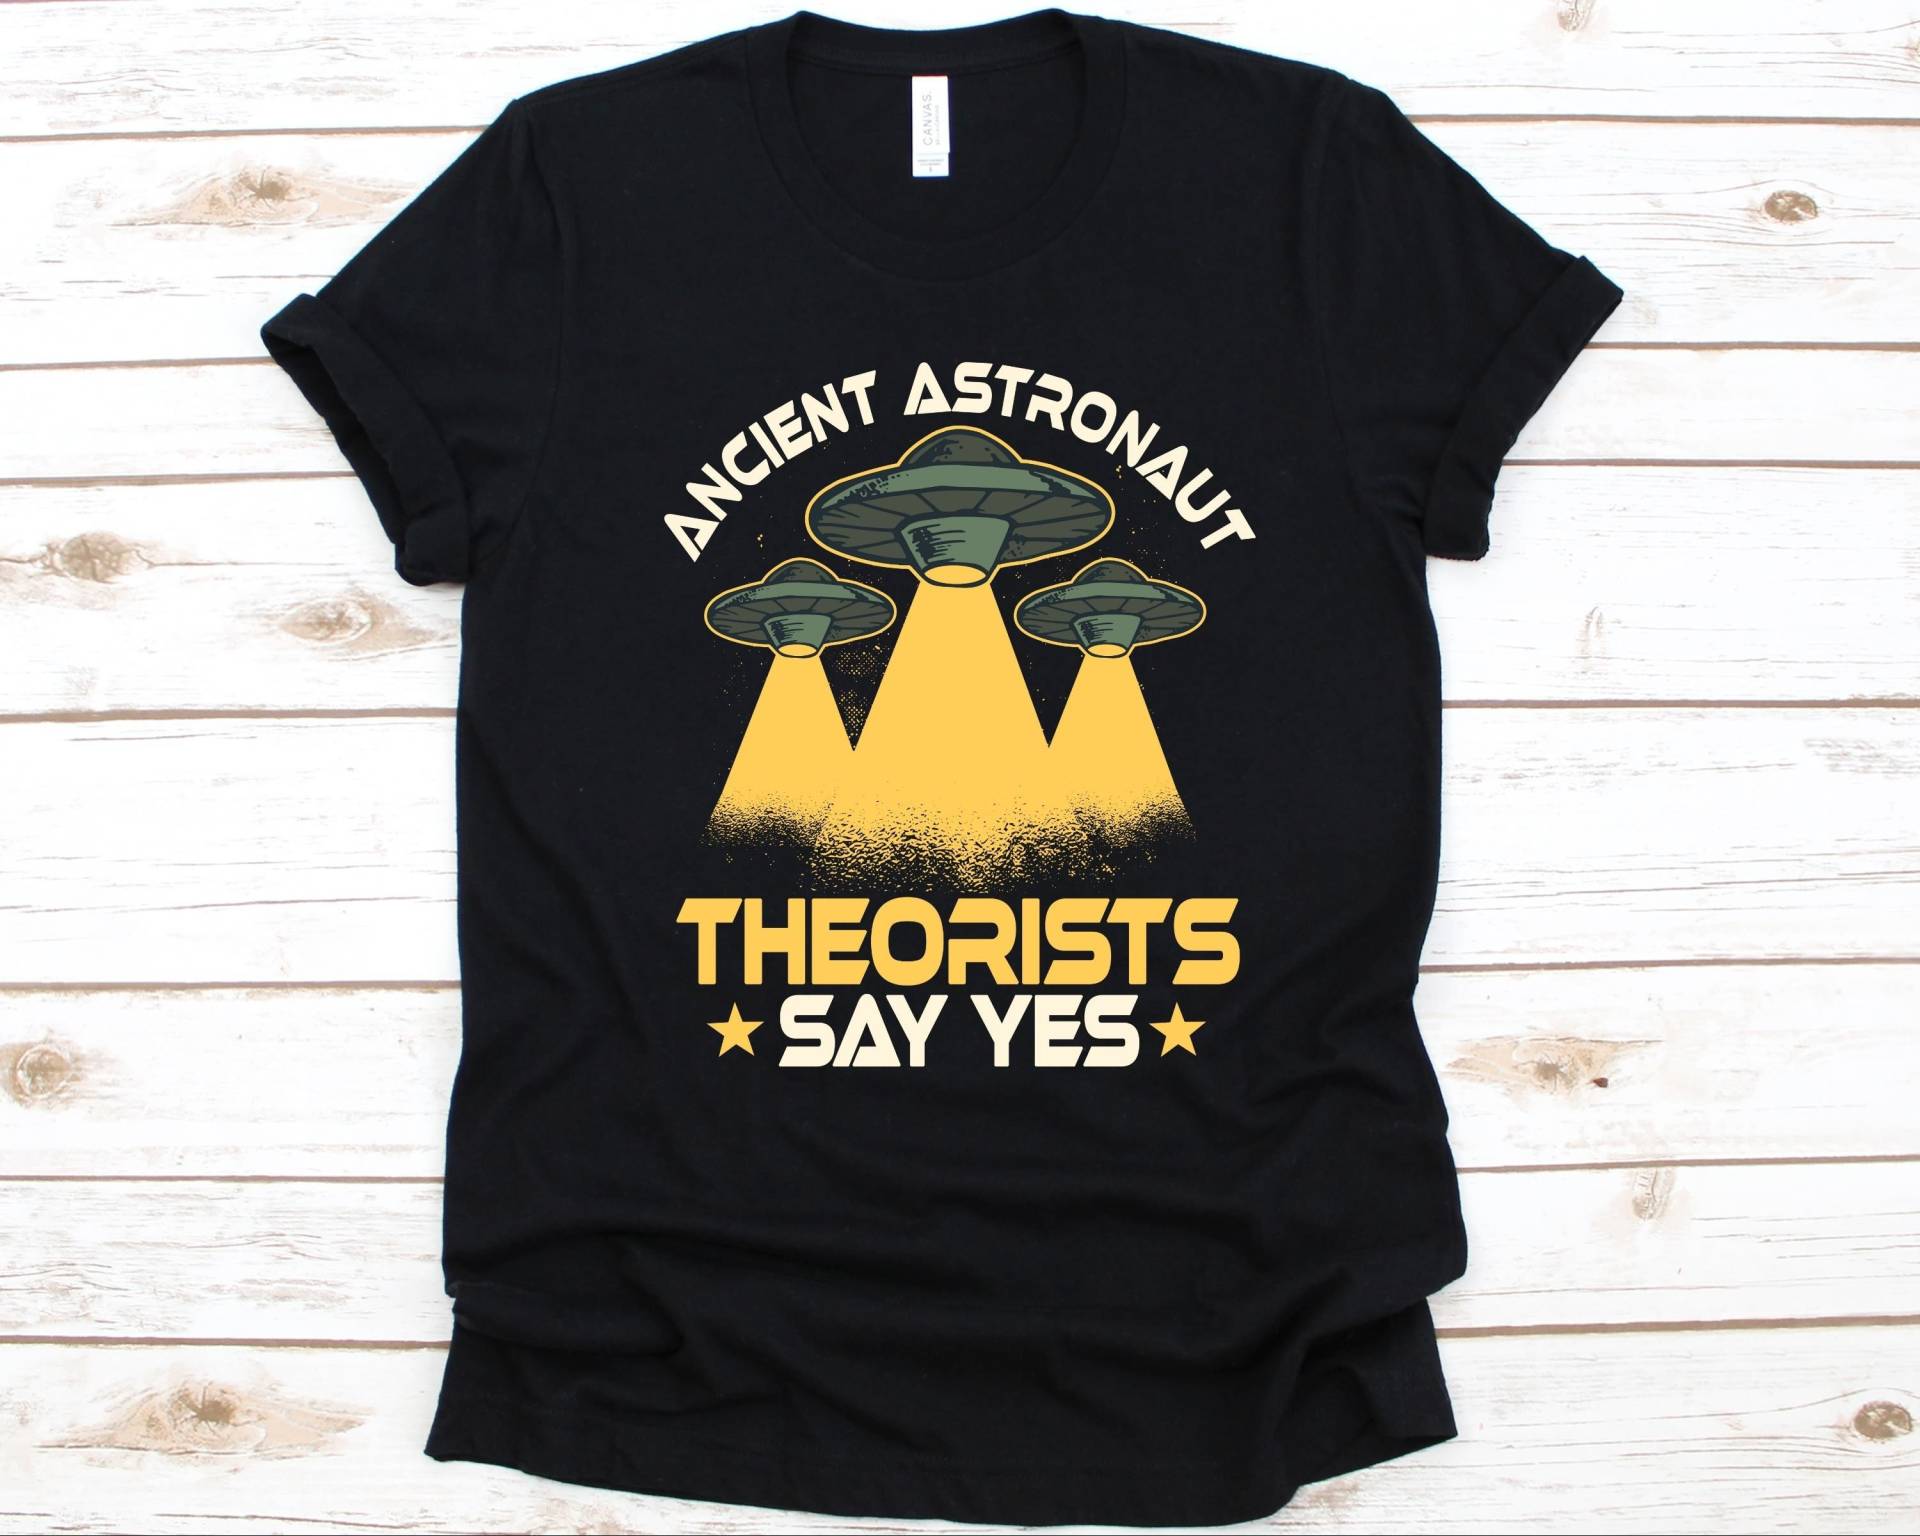 Uraltes Astronauten Theoristen Say Yes Shirt, Raketen Shirt Für Männer Und Frauen, Astronaut Kostüm, Geschenk, Space von AbbysDesignFactory